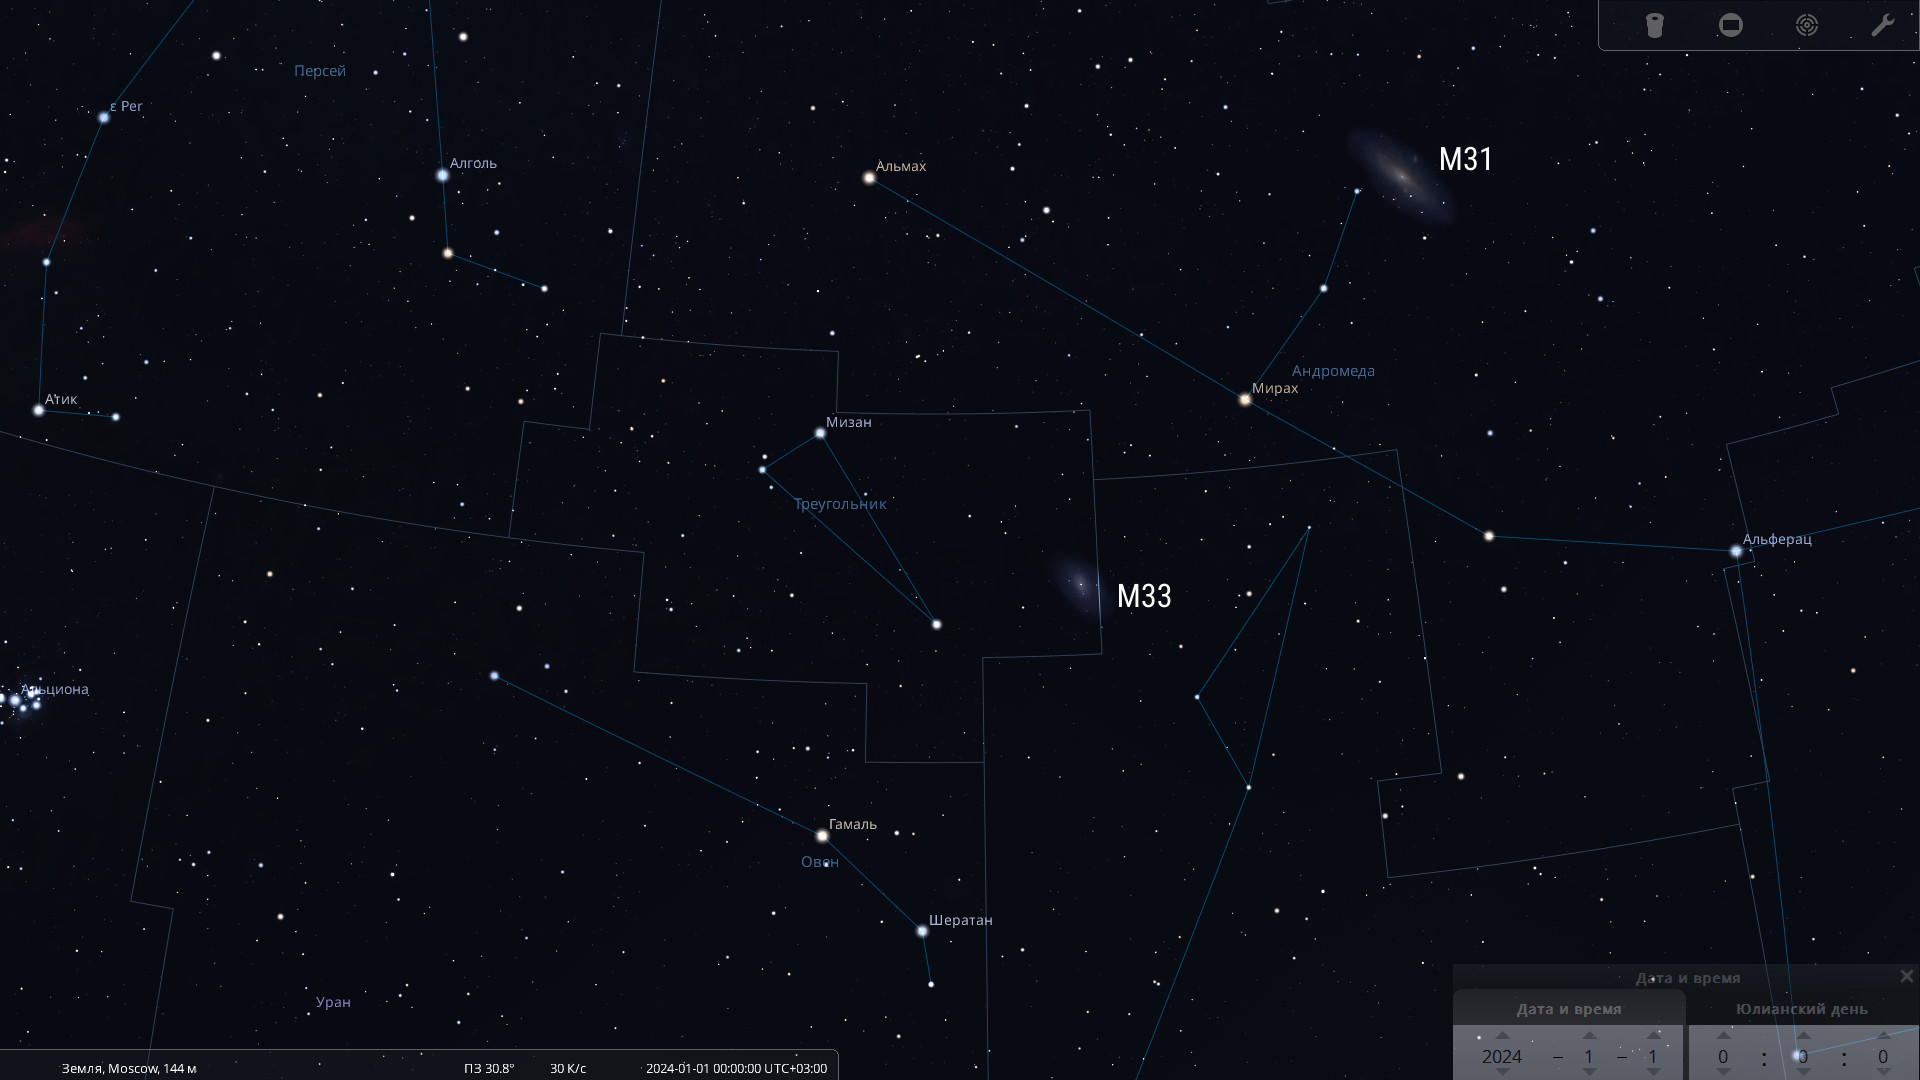 Созвездия Треугольника и Андромеды со своими знаменитыми галактиками  